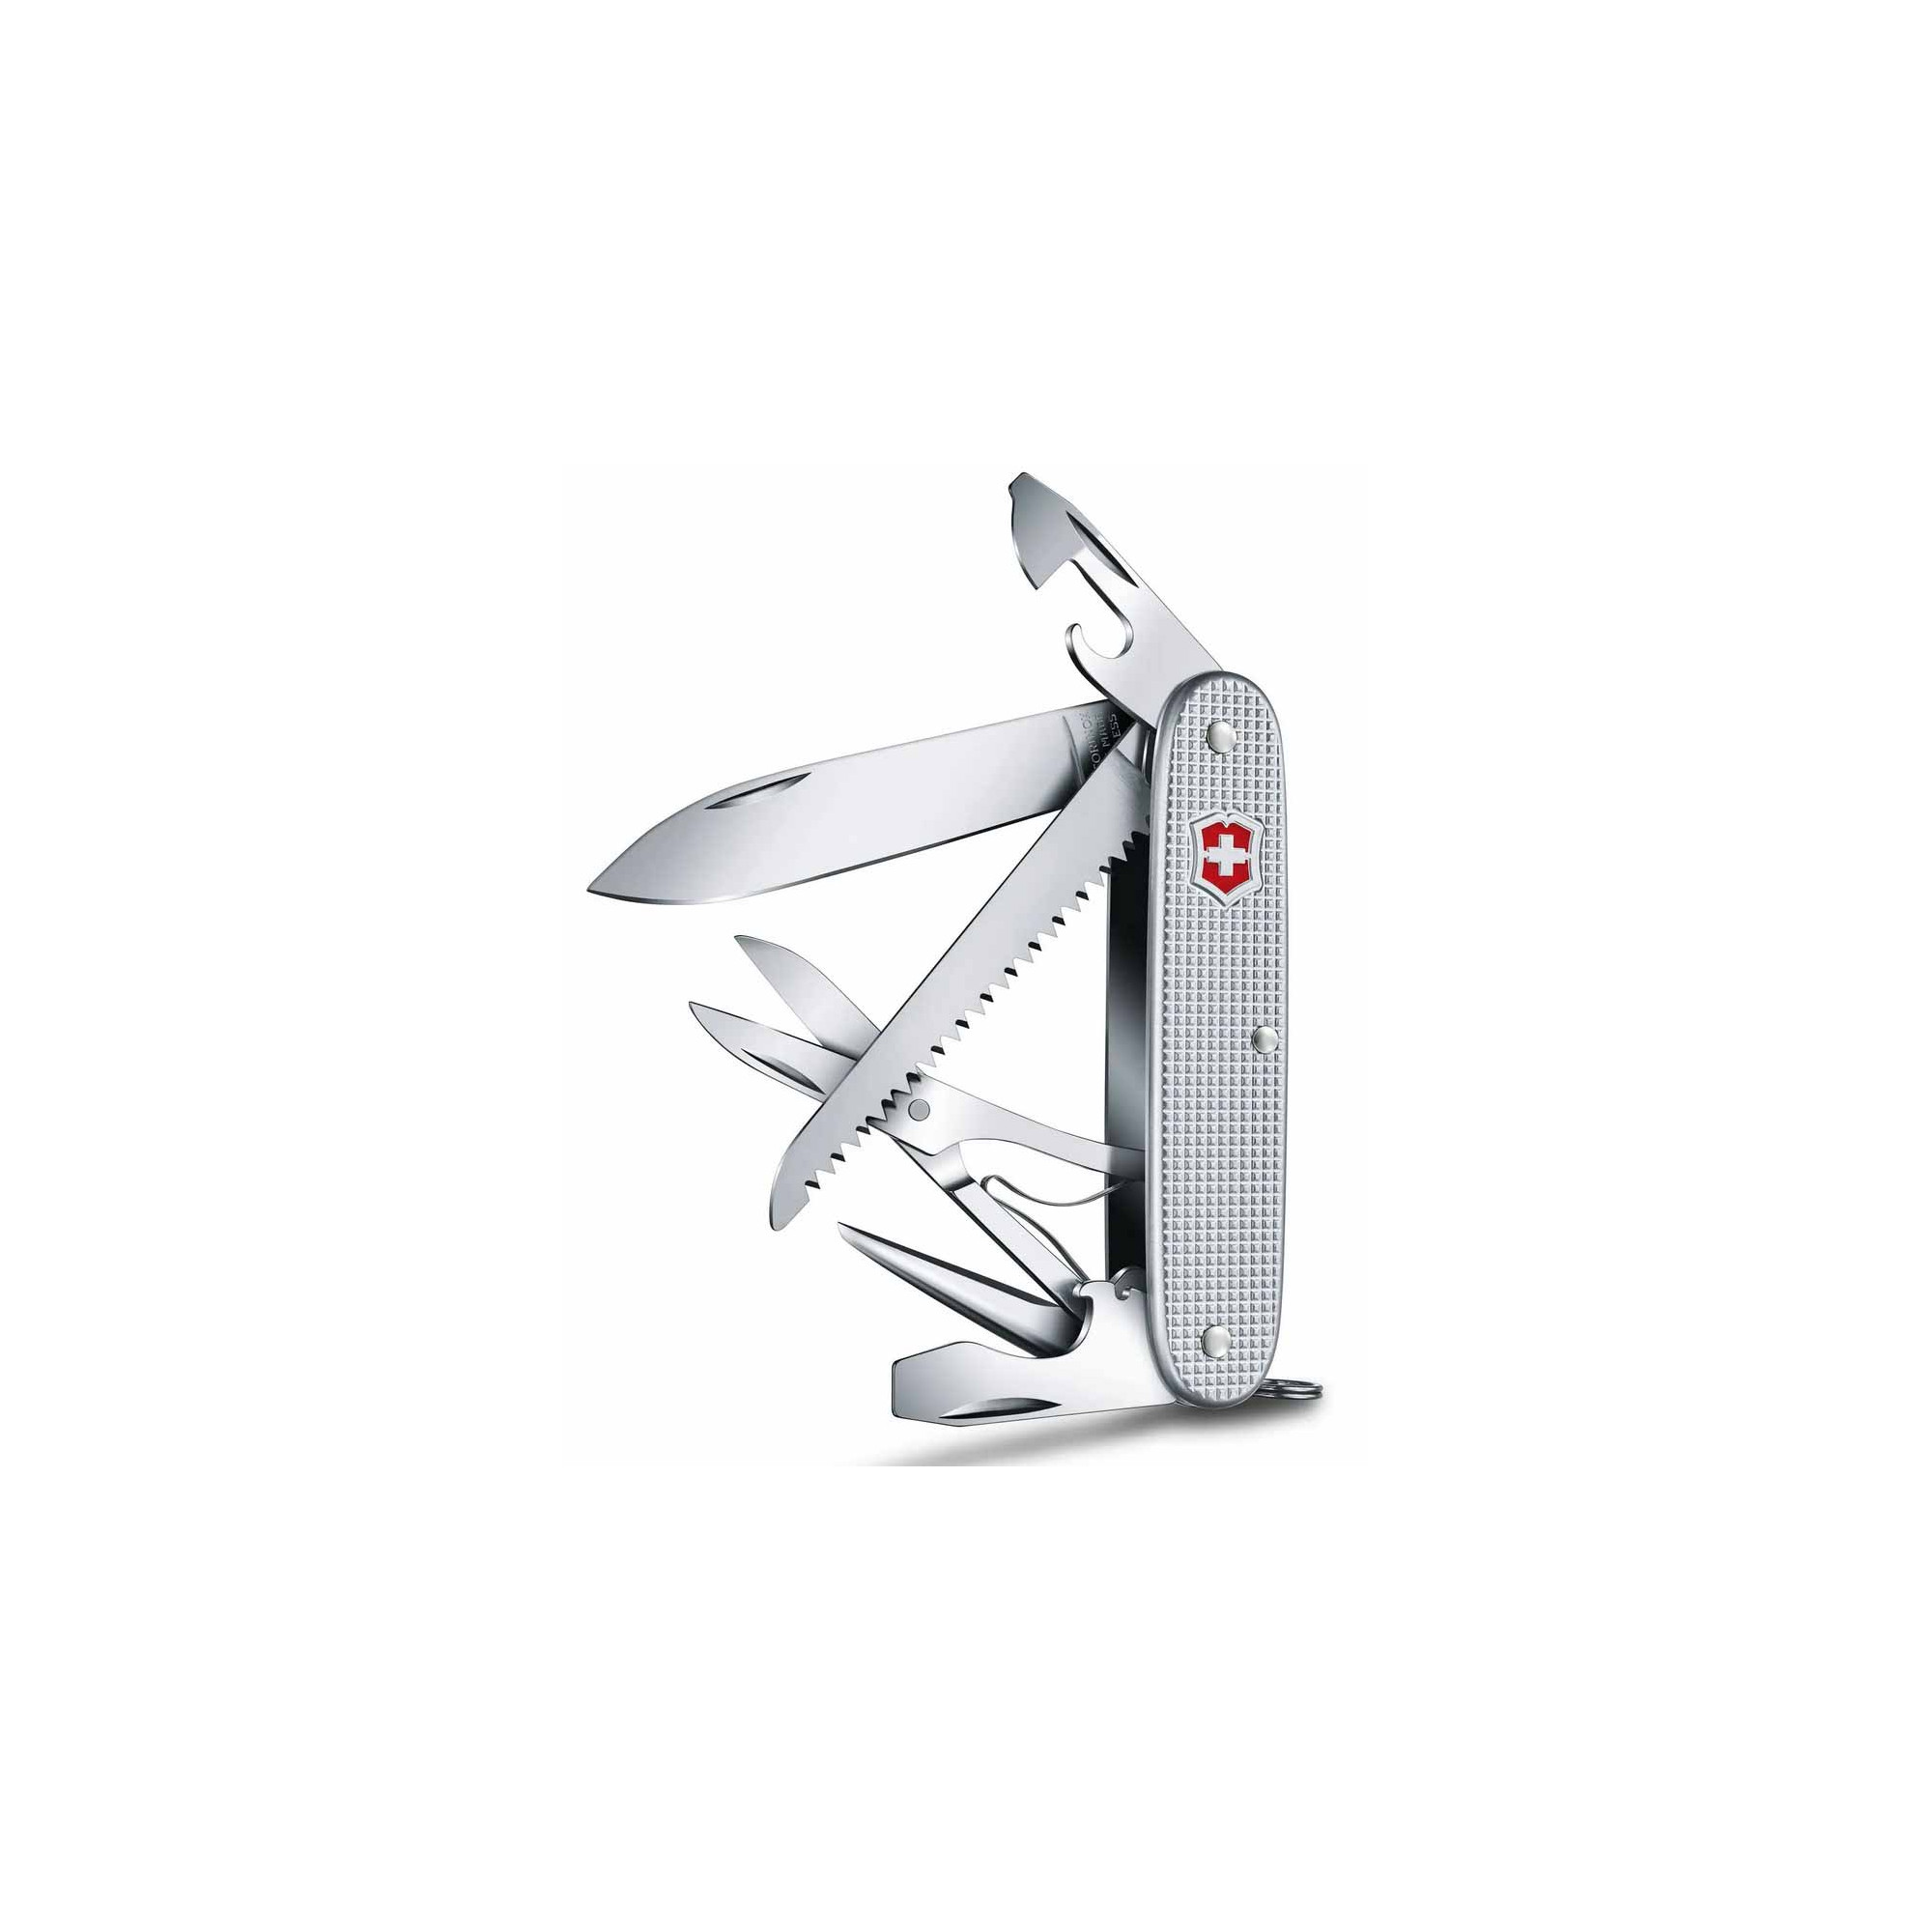  Victorinox Farmer Alox - Cuchillo suizo del ejército, cuchillo  de bolsillo multifunción de fabricación suiza con hoja grande,  destornillador, abrelatas y pelacables, 9 funciones : Todo lo demás